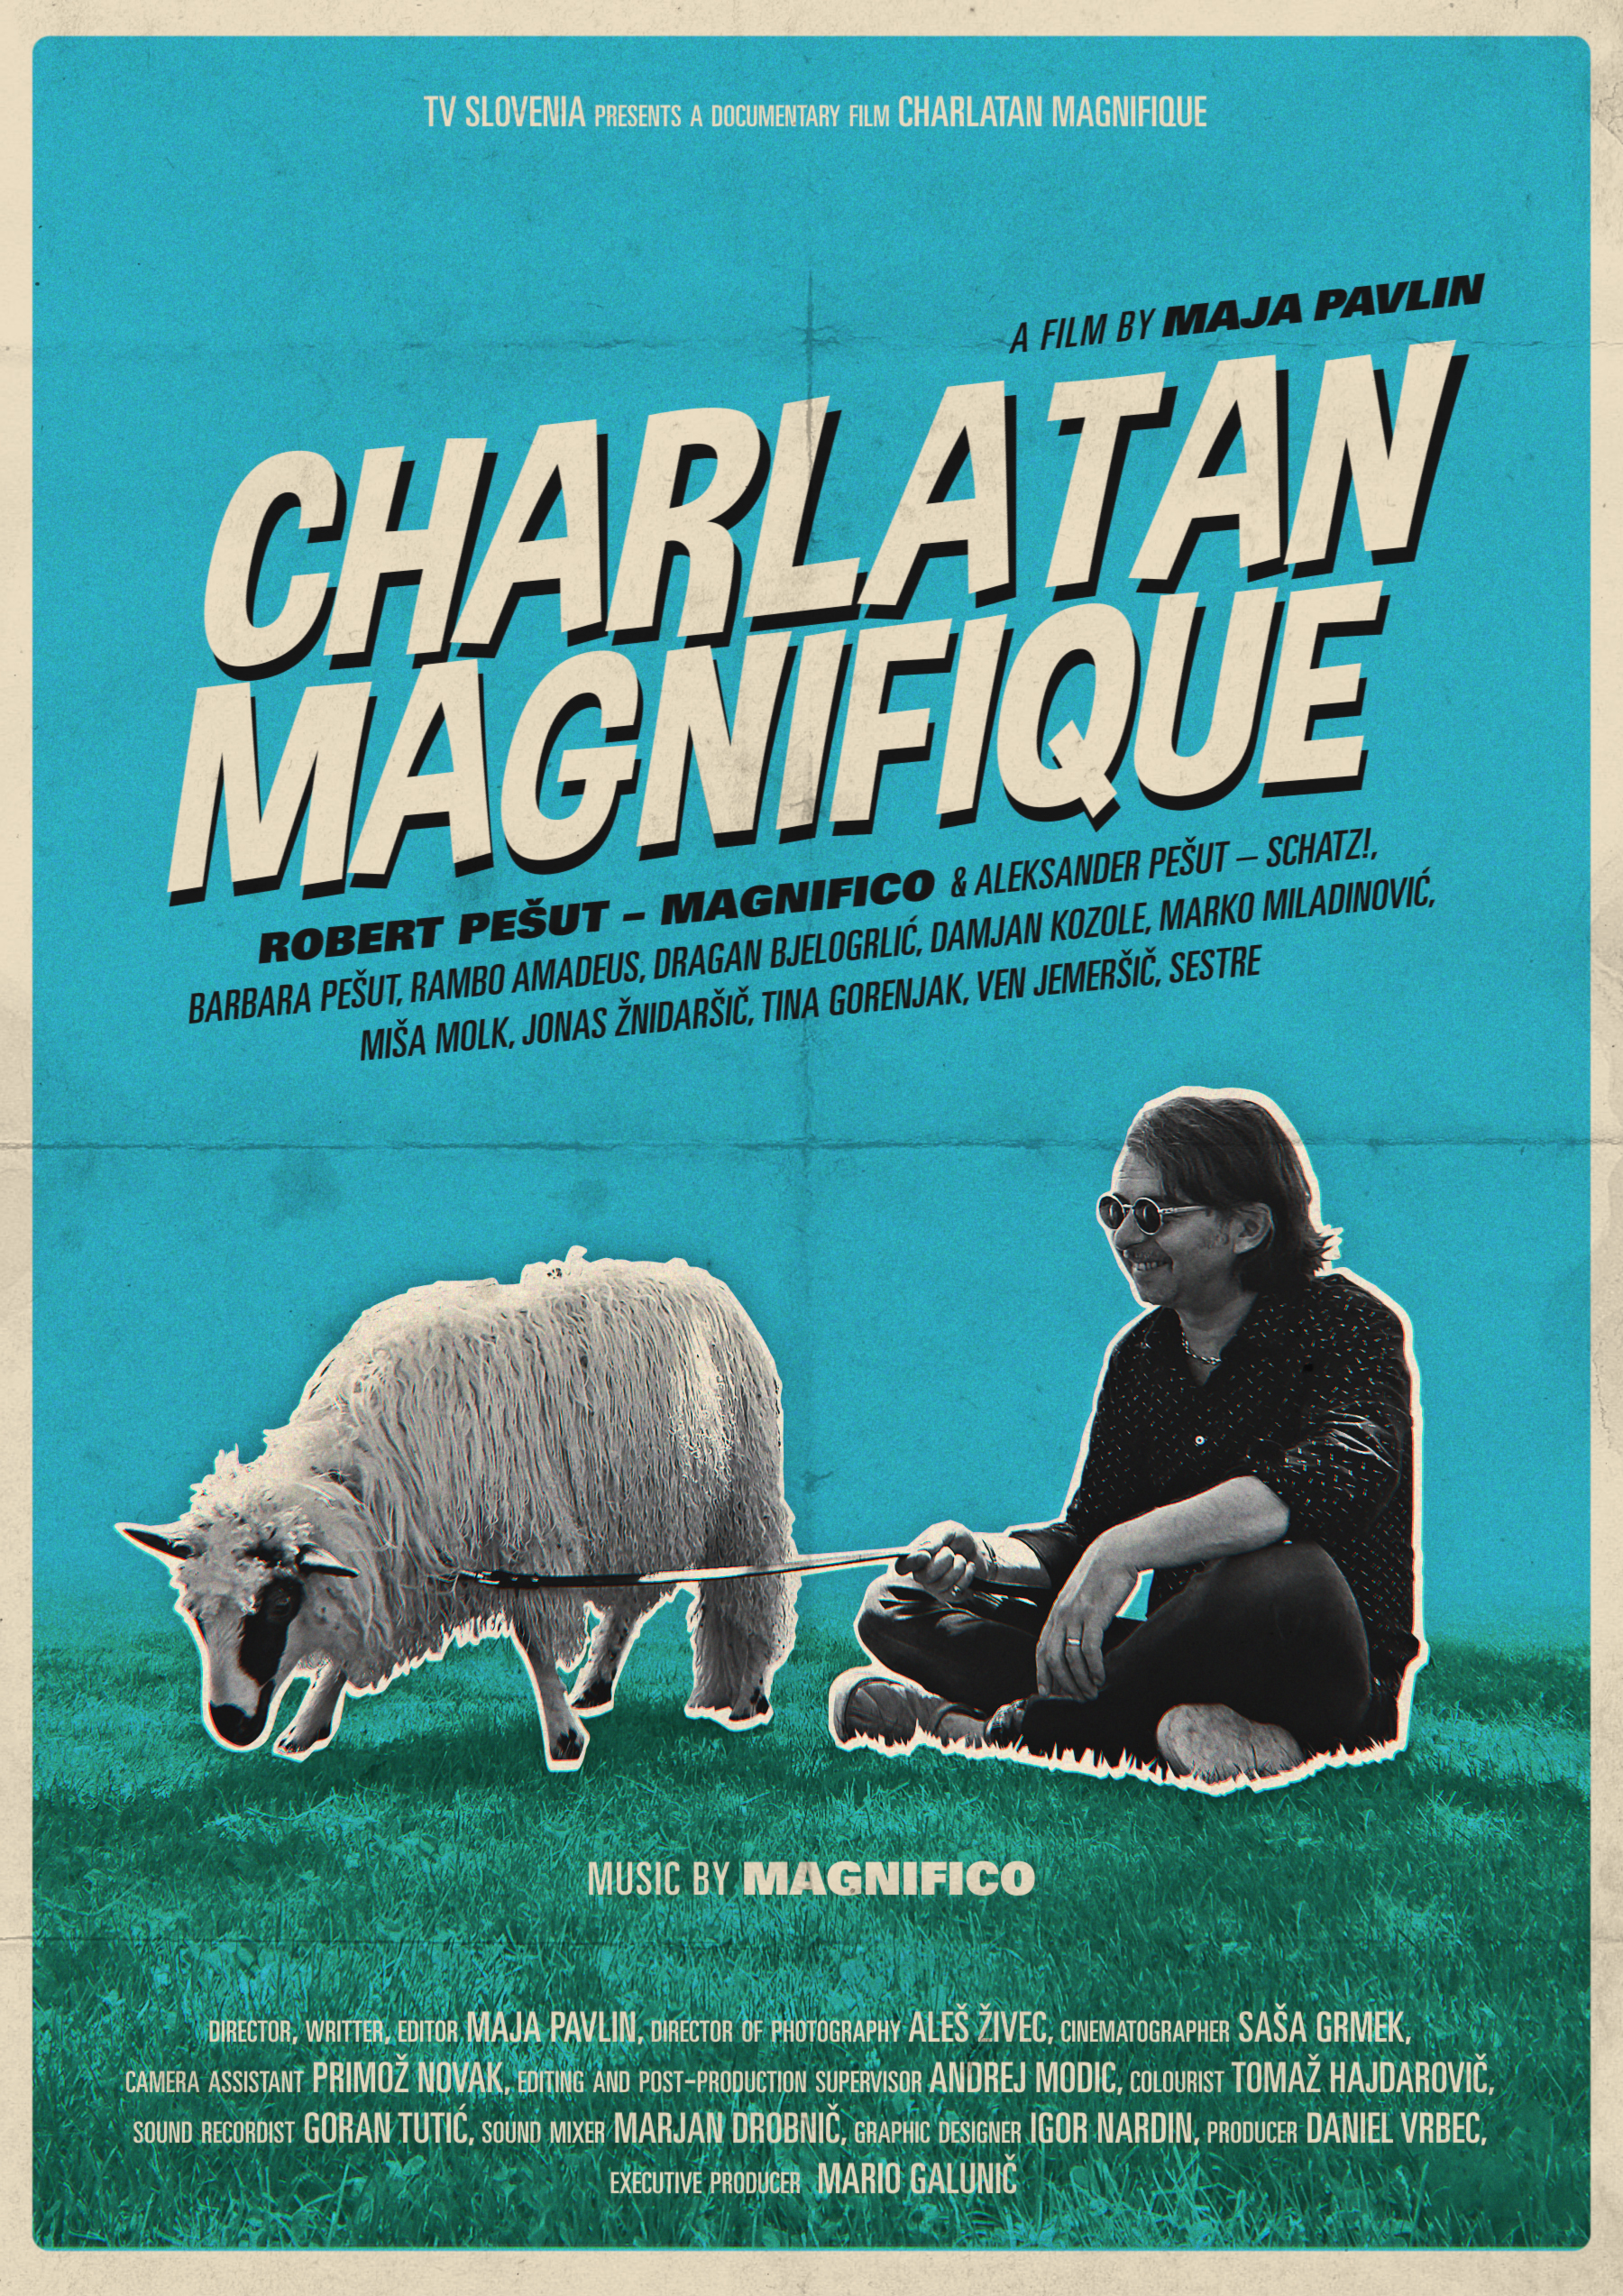 Charlatan Magnifique (2016) Screenshot 4 